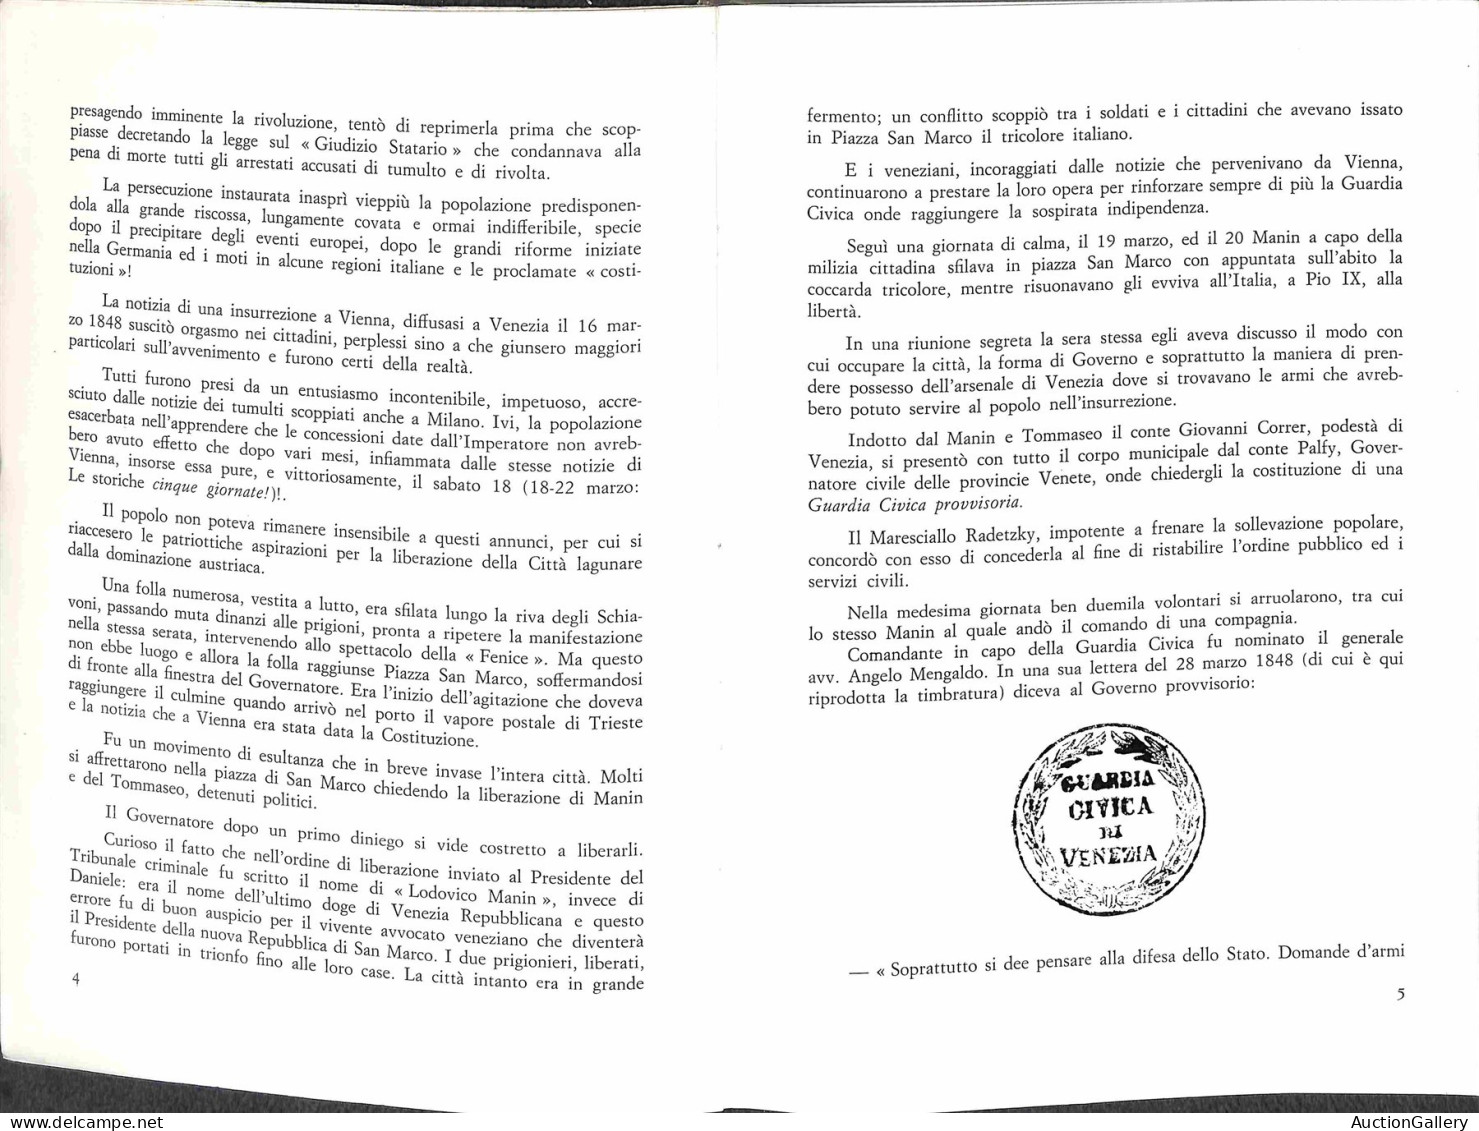 Biblioteca Filatelica - Italia - La Repubblica Veneta 1848/1849 - Catalogo Descrittivo E Valutazione Dei Bolli Di Franch - Otros & Sin Clasificación